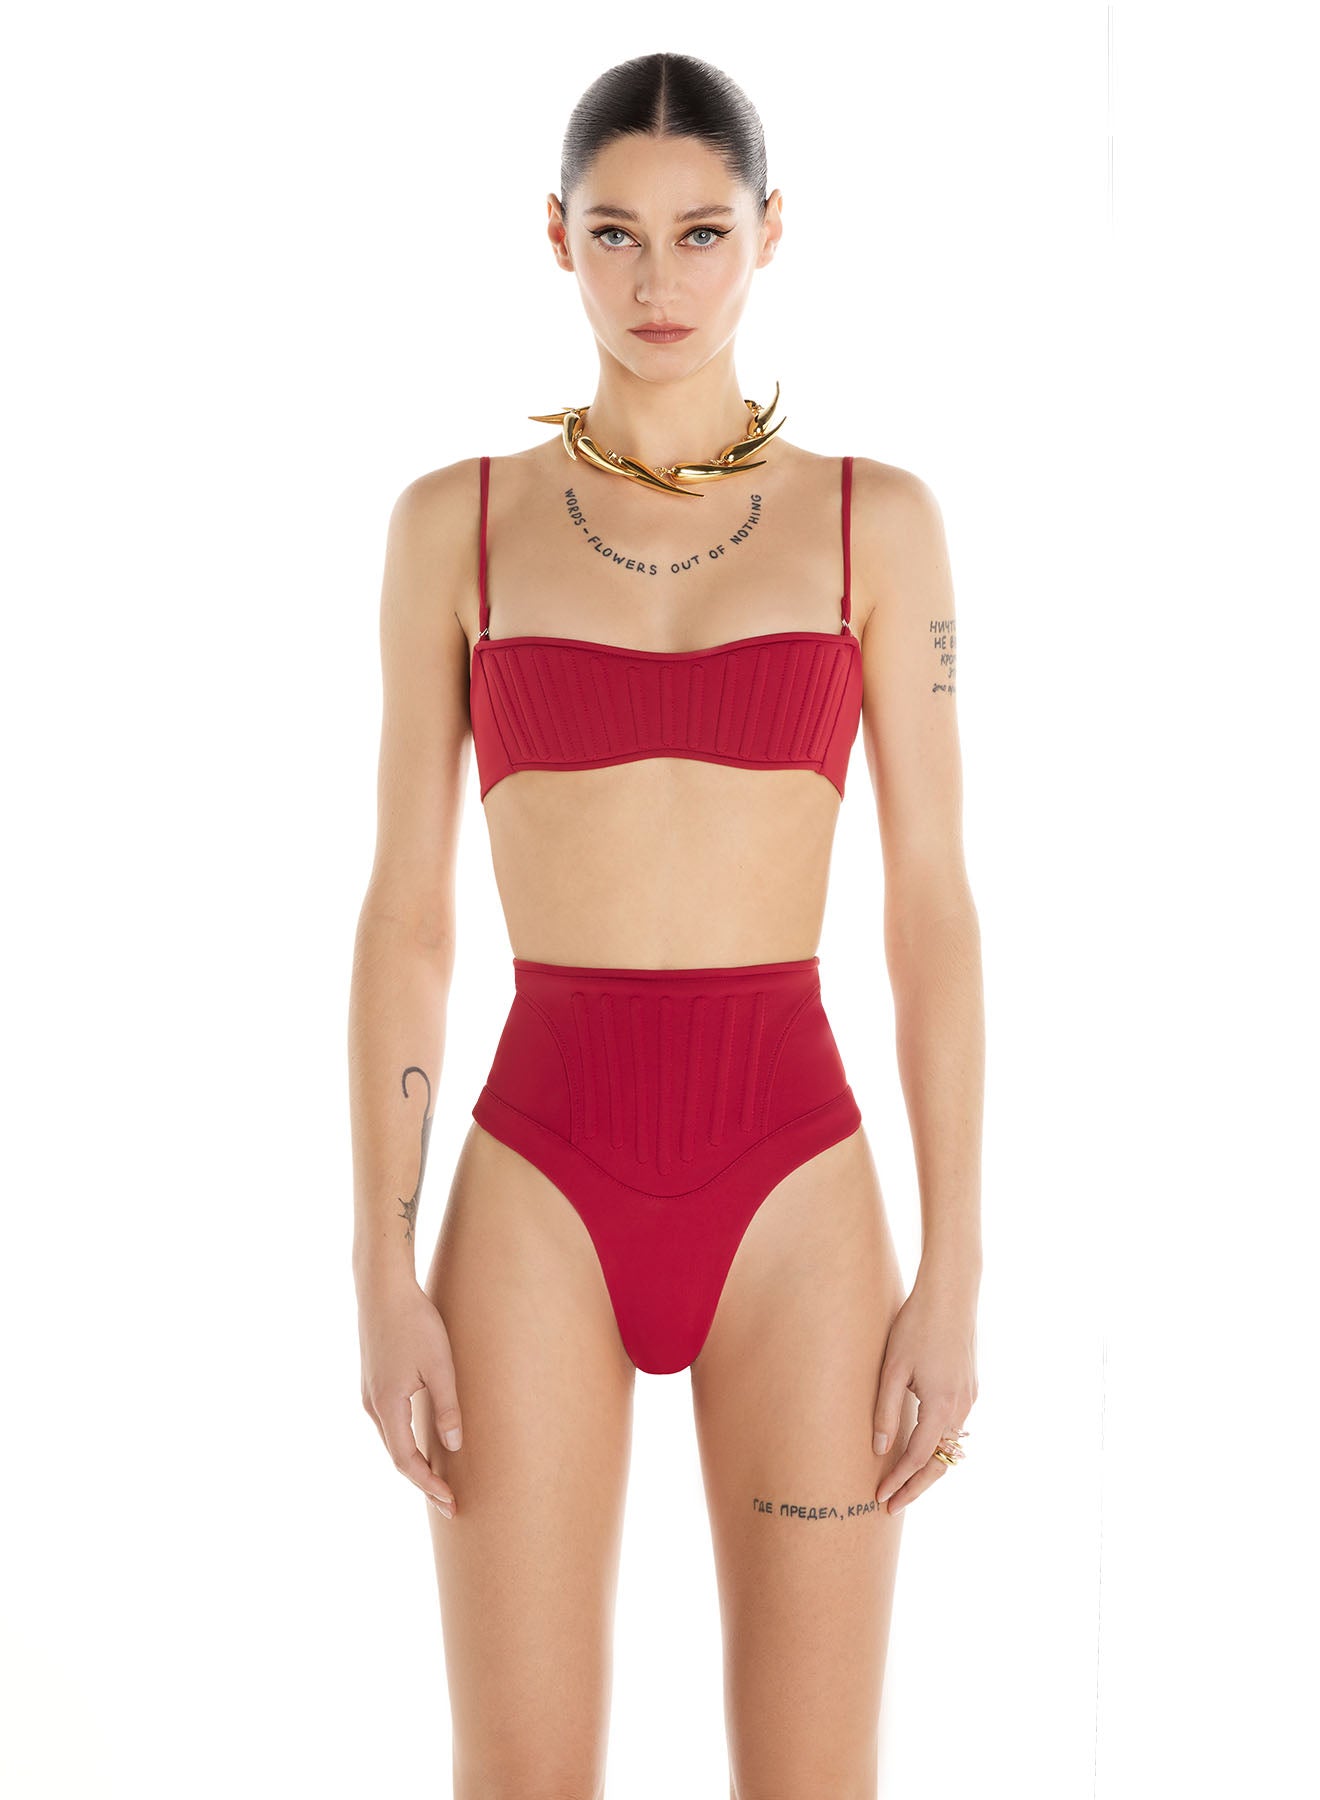 red corset bikini top